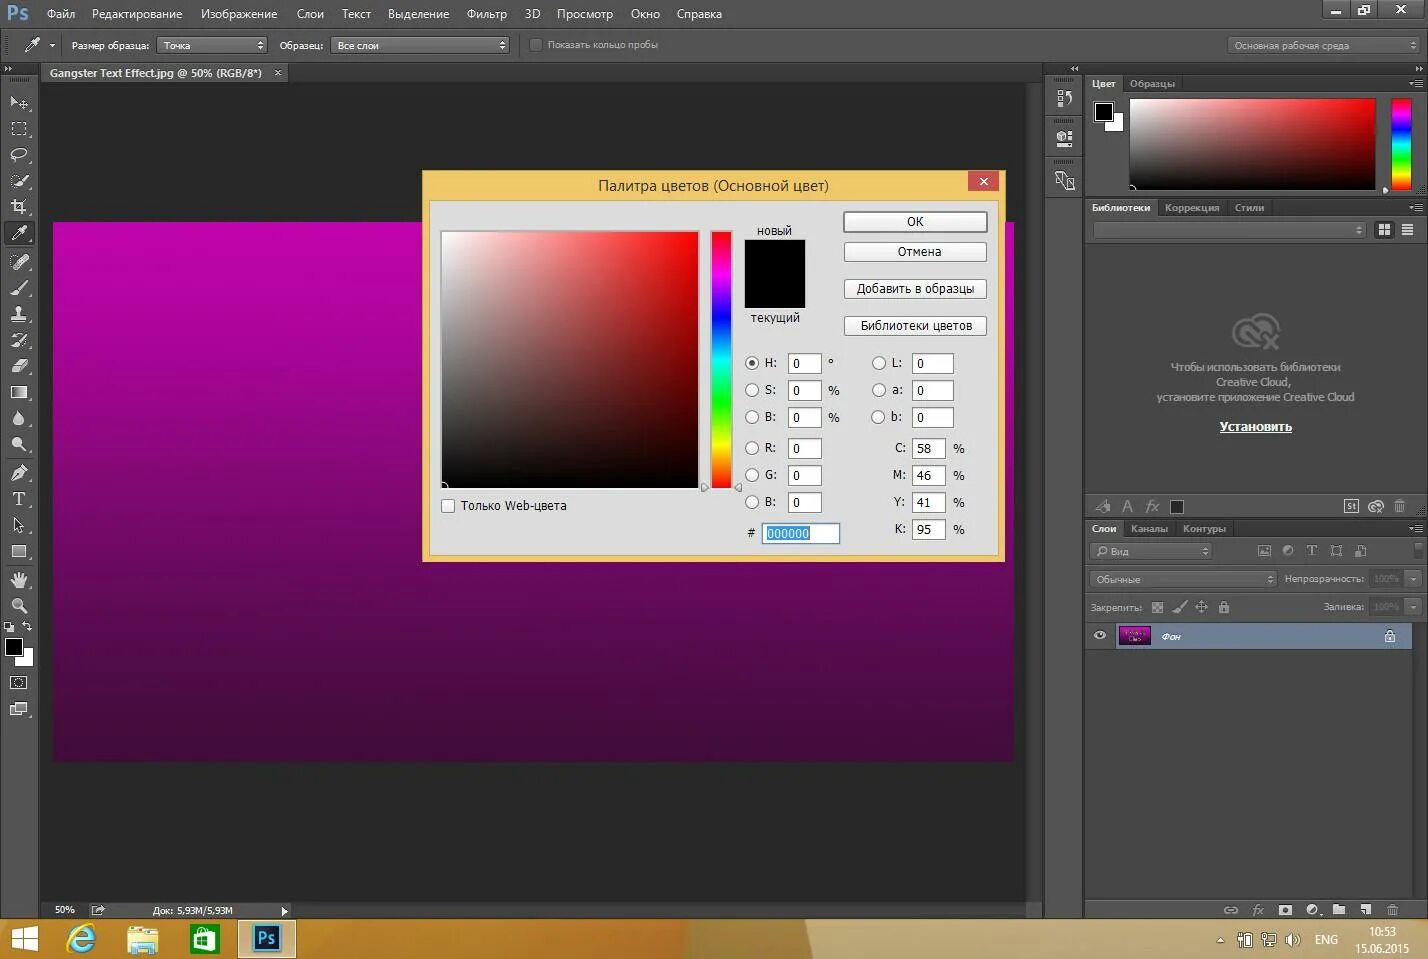 Adobe Photoshop. Цветной фотошоп адоб. Дизайнерские программы фотошоп. Сайт adobe com